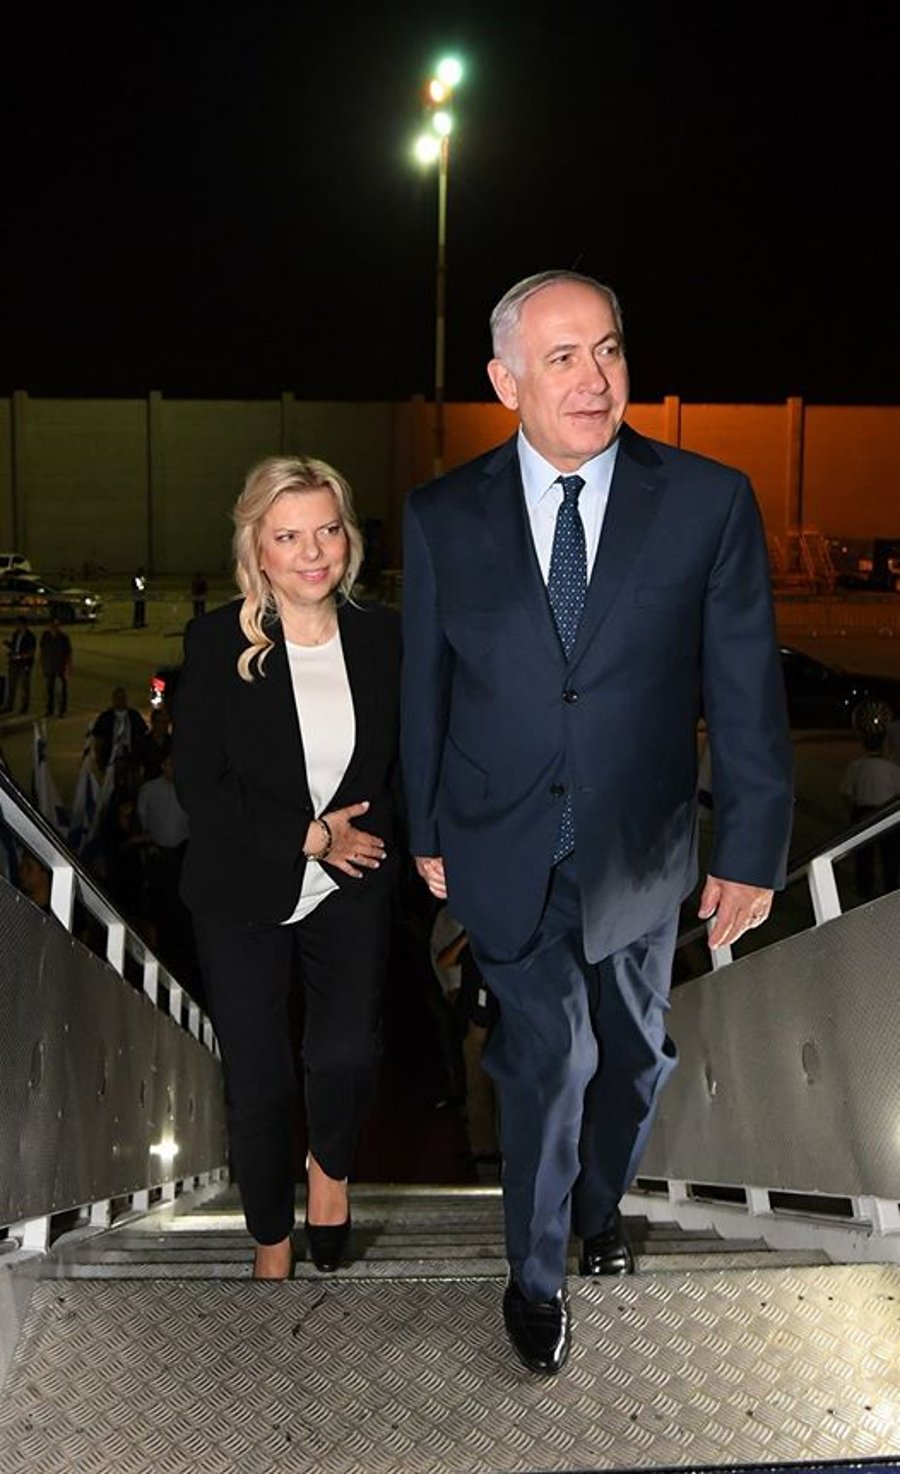 ראש הממשלה ורעייתו עולים למטוס בדרך לפריז, אמש